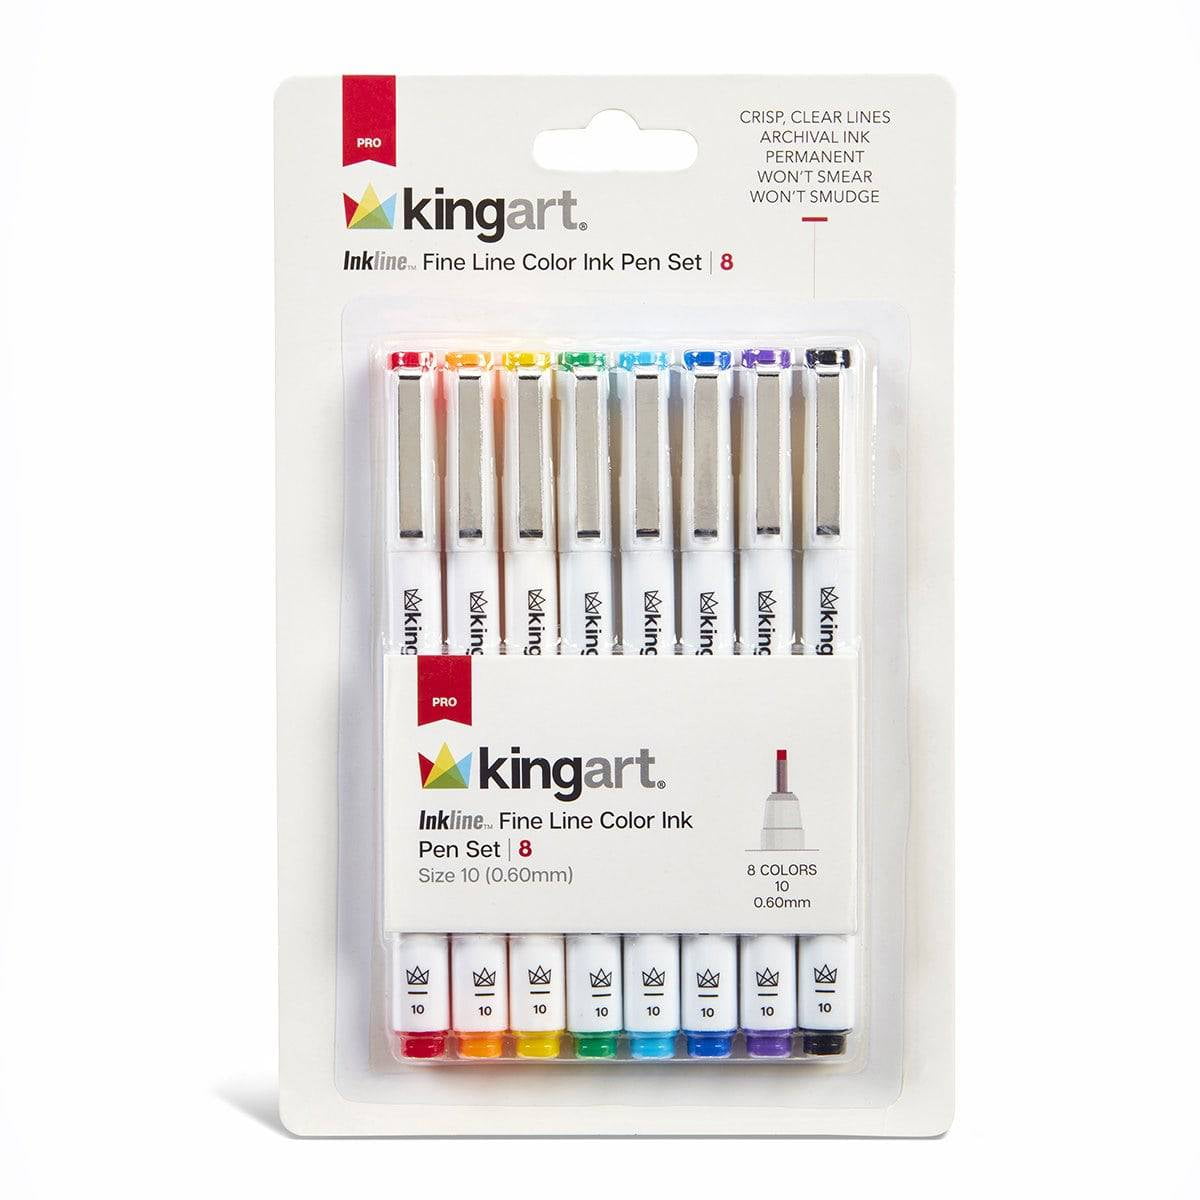 KINGART® Fine Line Color Ink Pens, Set of 48 Unique Colors, Tip